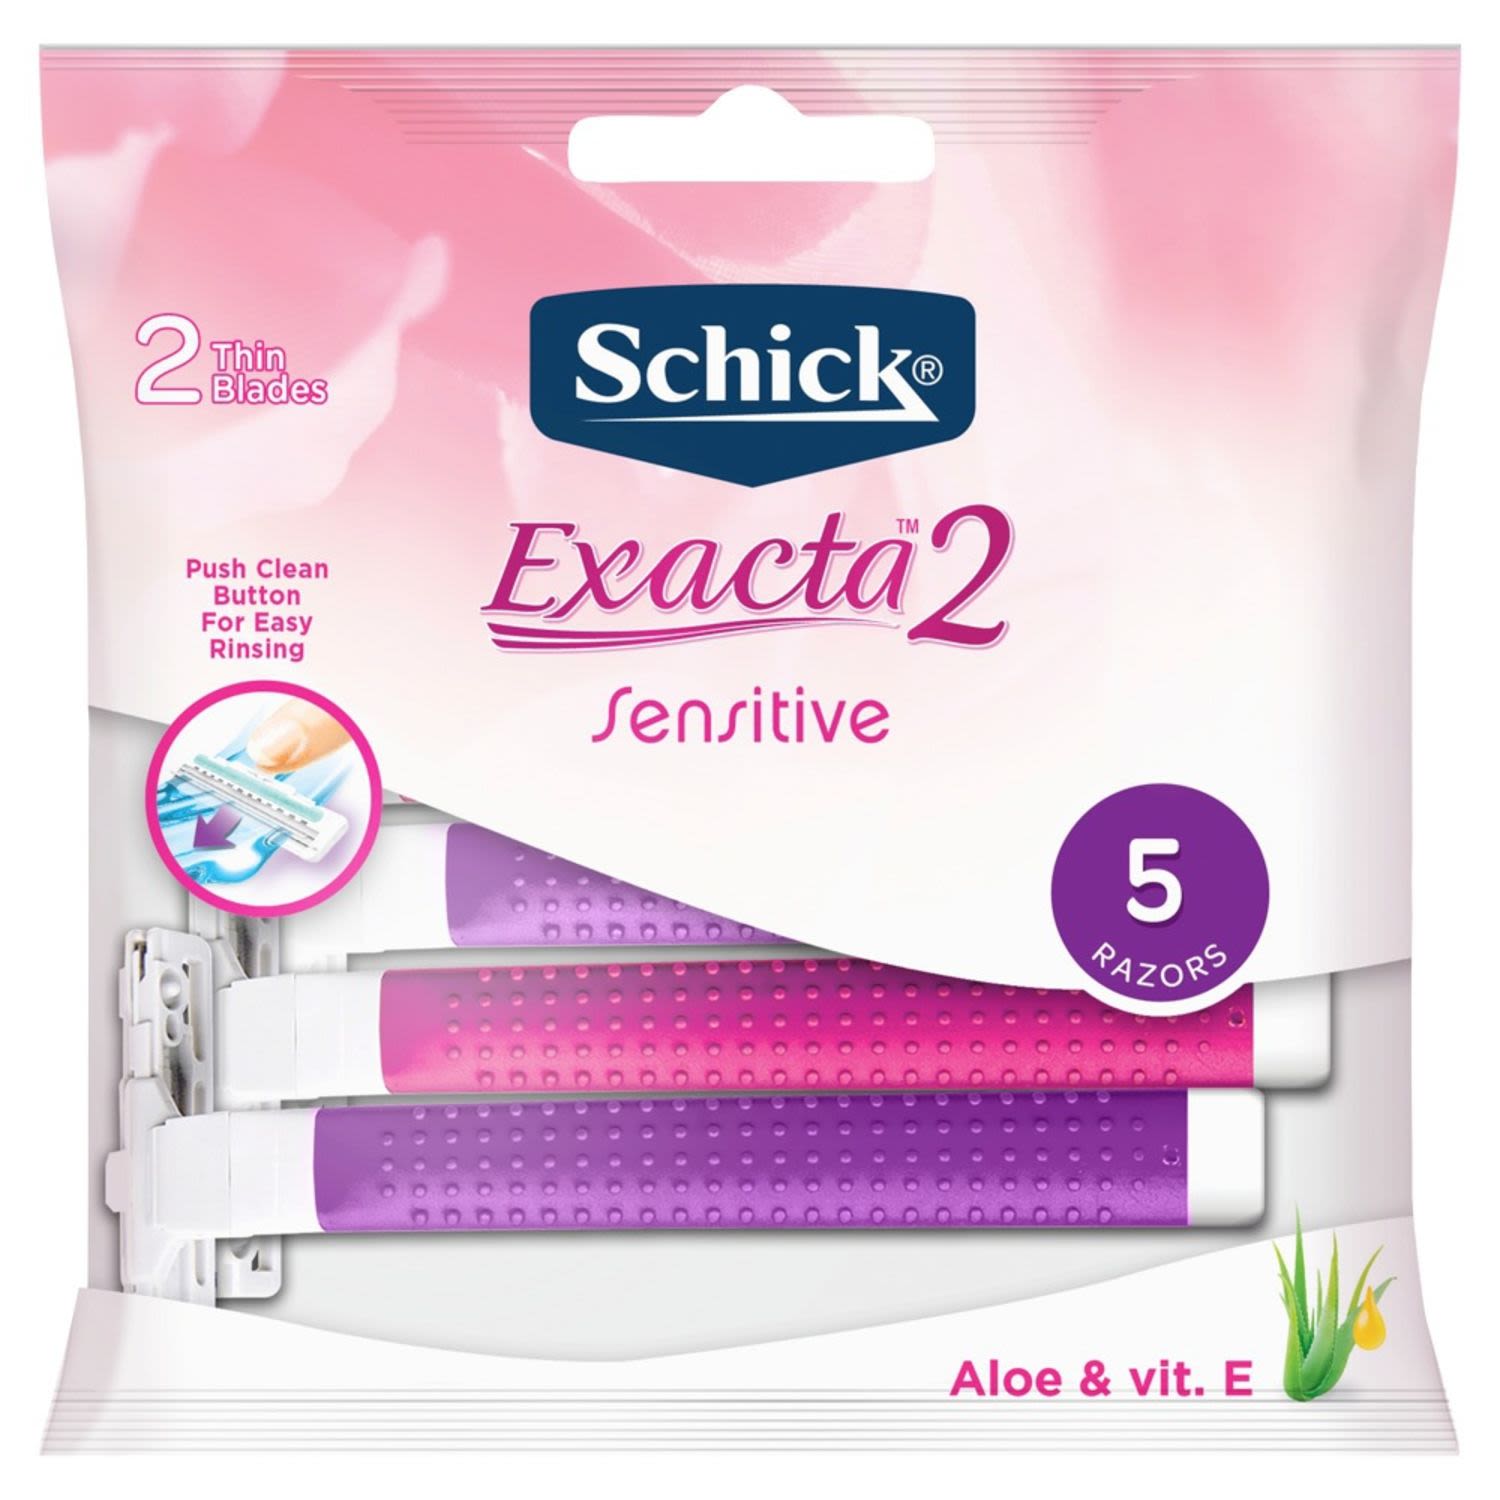 Schick Exacta 2 for Women, 5 Each